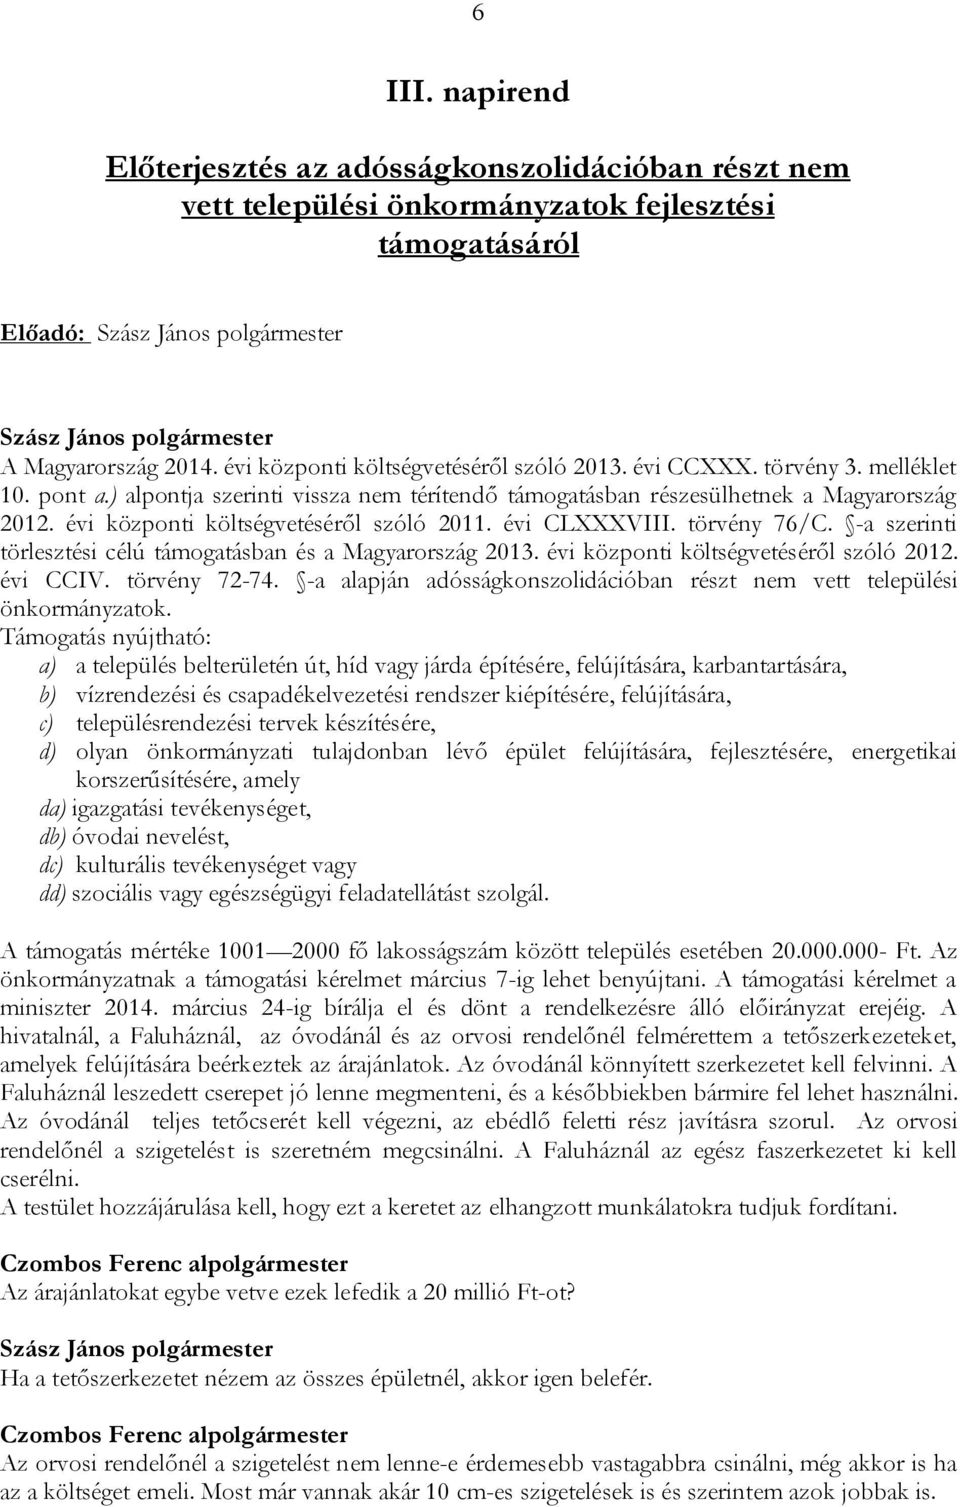 törvény 76/C. -a szerinti törlesztési célú támogatásban és a Magyarország 2013. évi központi költségvetéséről szóló 2012. évi CCIV. törvény 72-74.